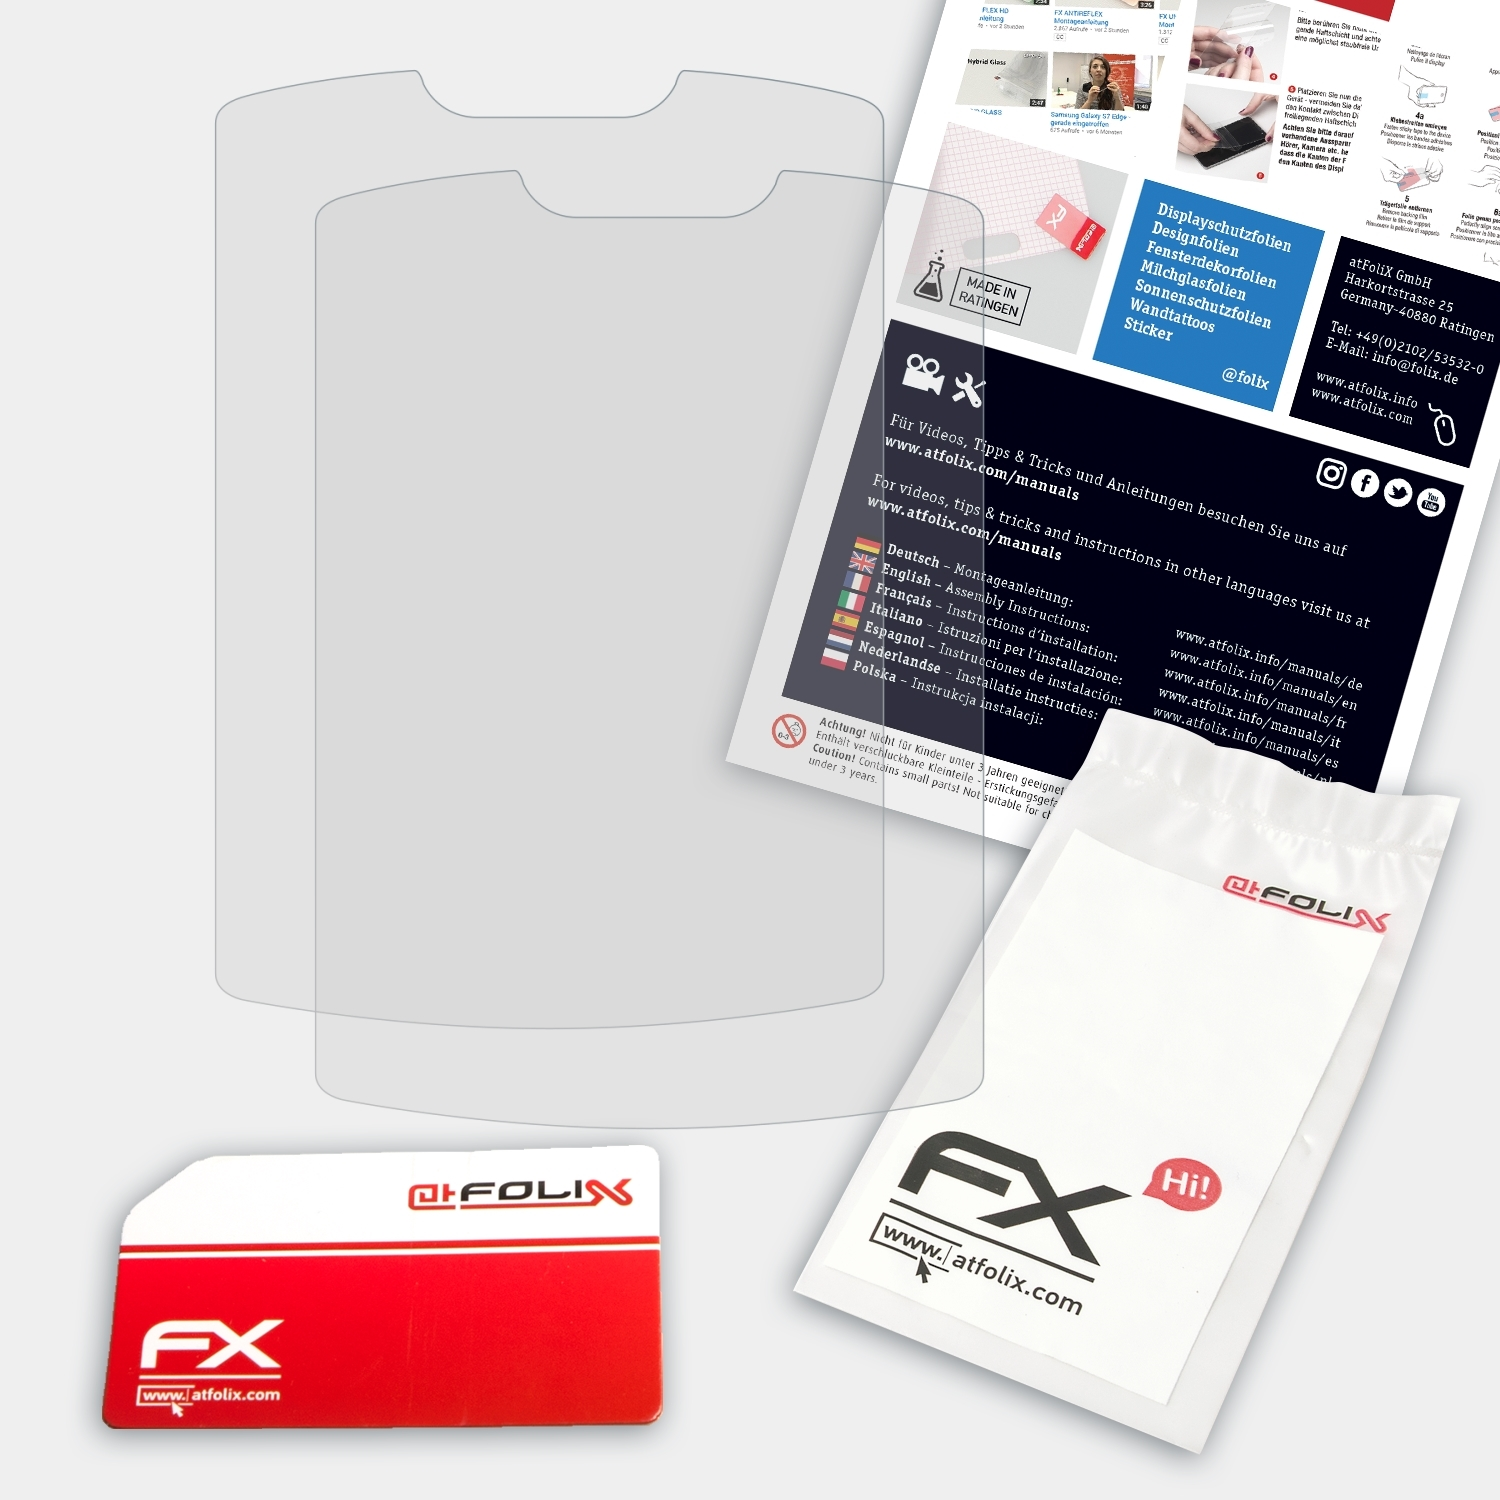 ATFOLIX 2x Pulox FX-Antireflex PO-300) Displayschutz(für